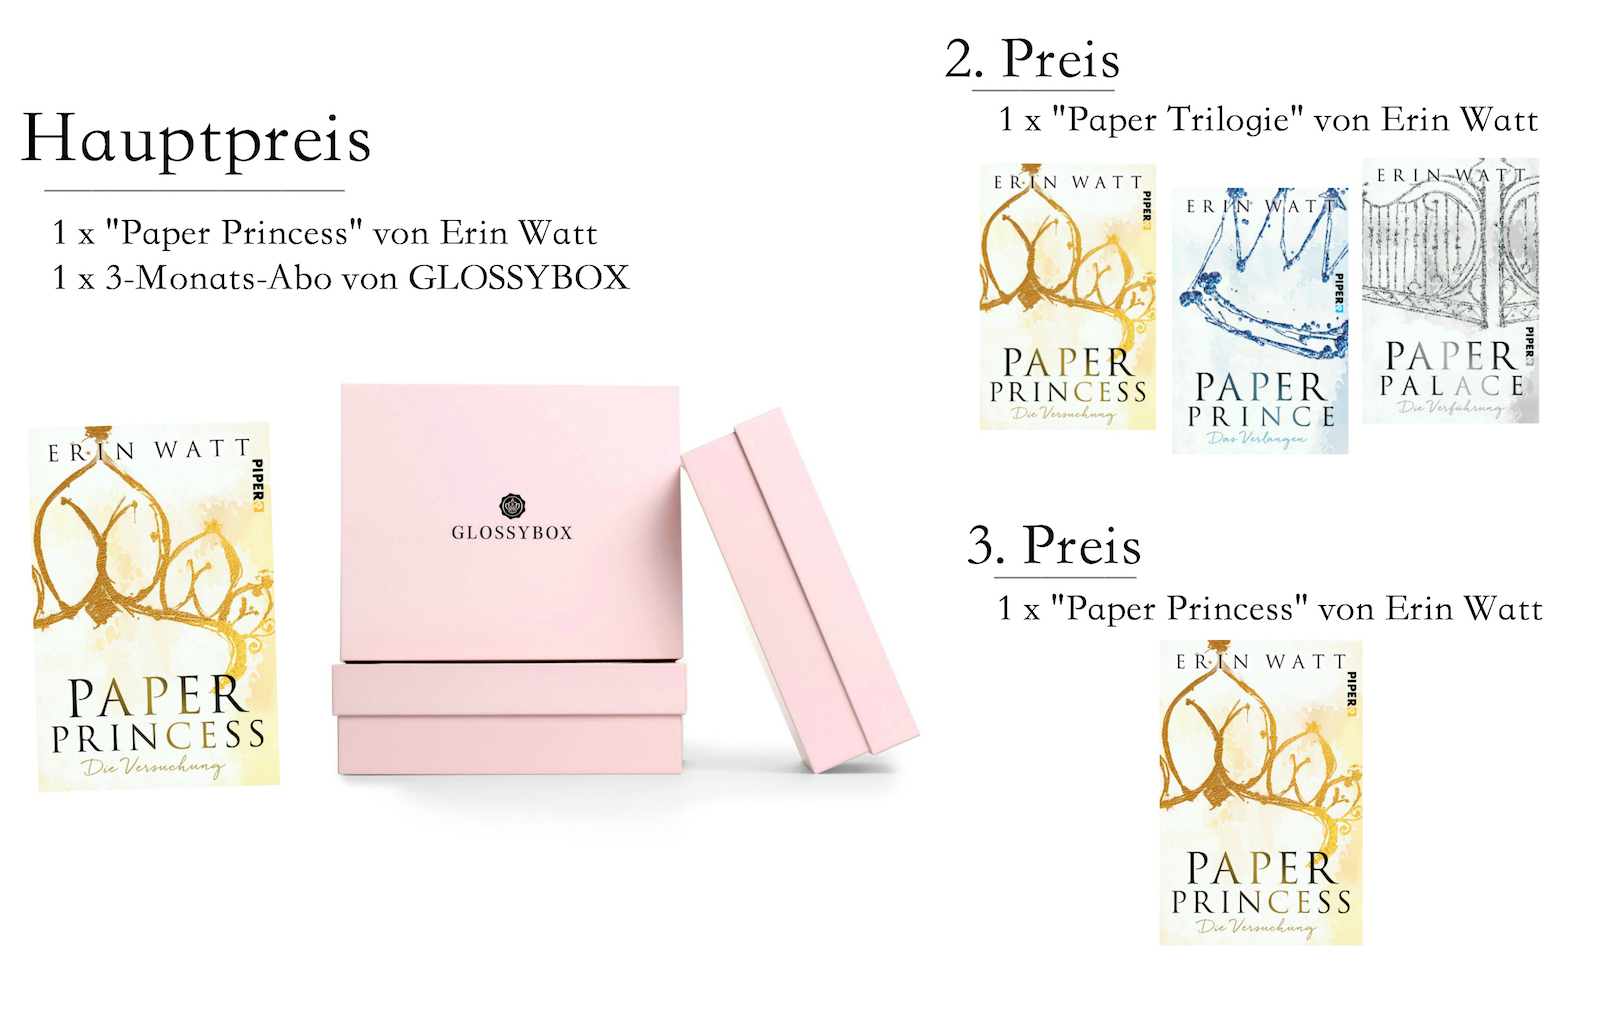 Paper Princess - Preise (Glossy Box)